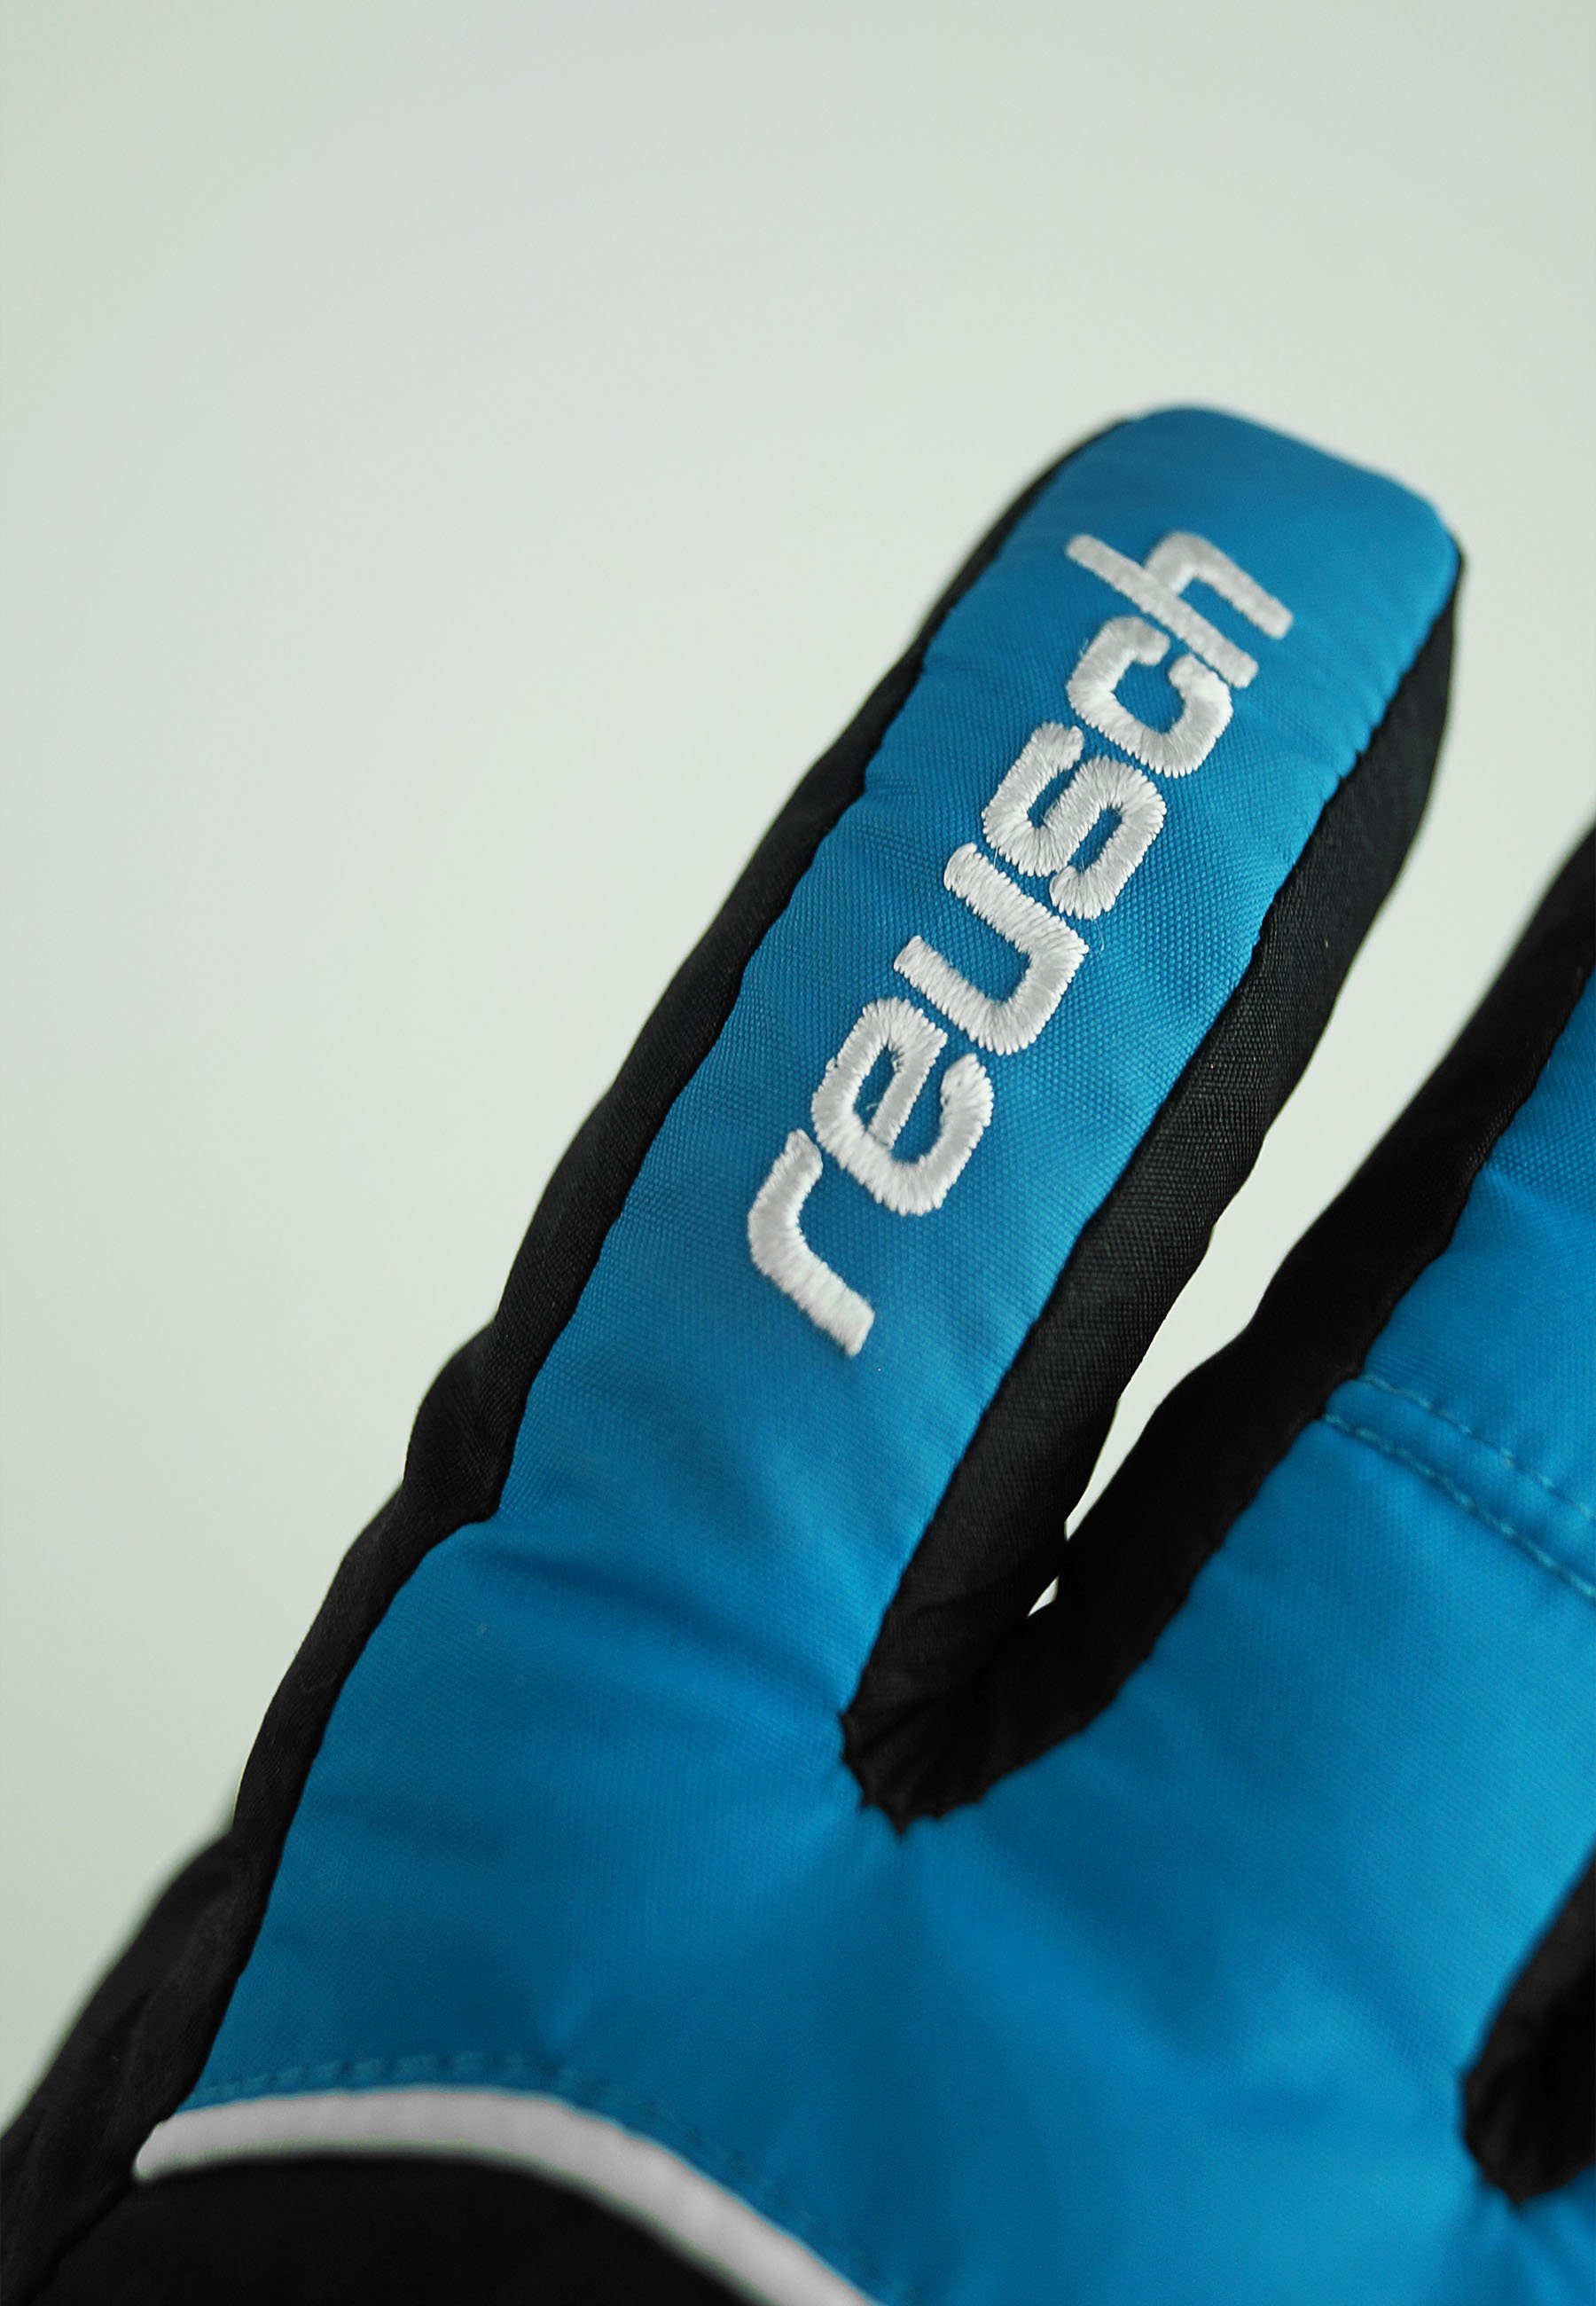 blau-schwarz GORE-TEX Funktionsmembran Teddy Reusch Skihandschuhe mit wasserdichter